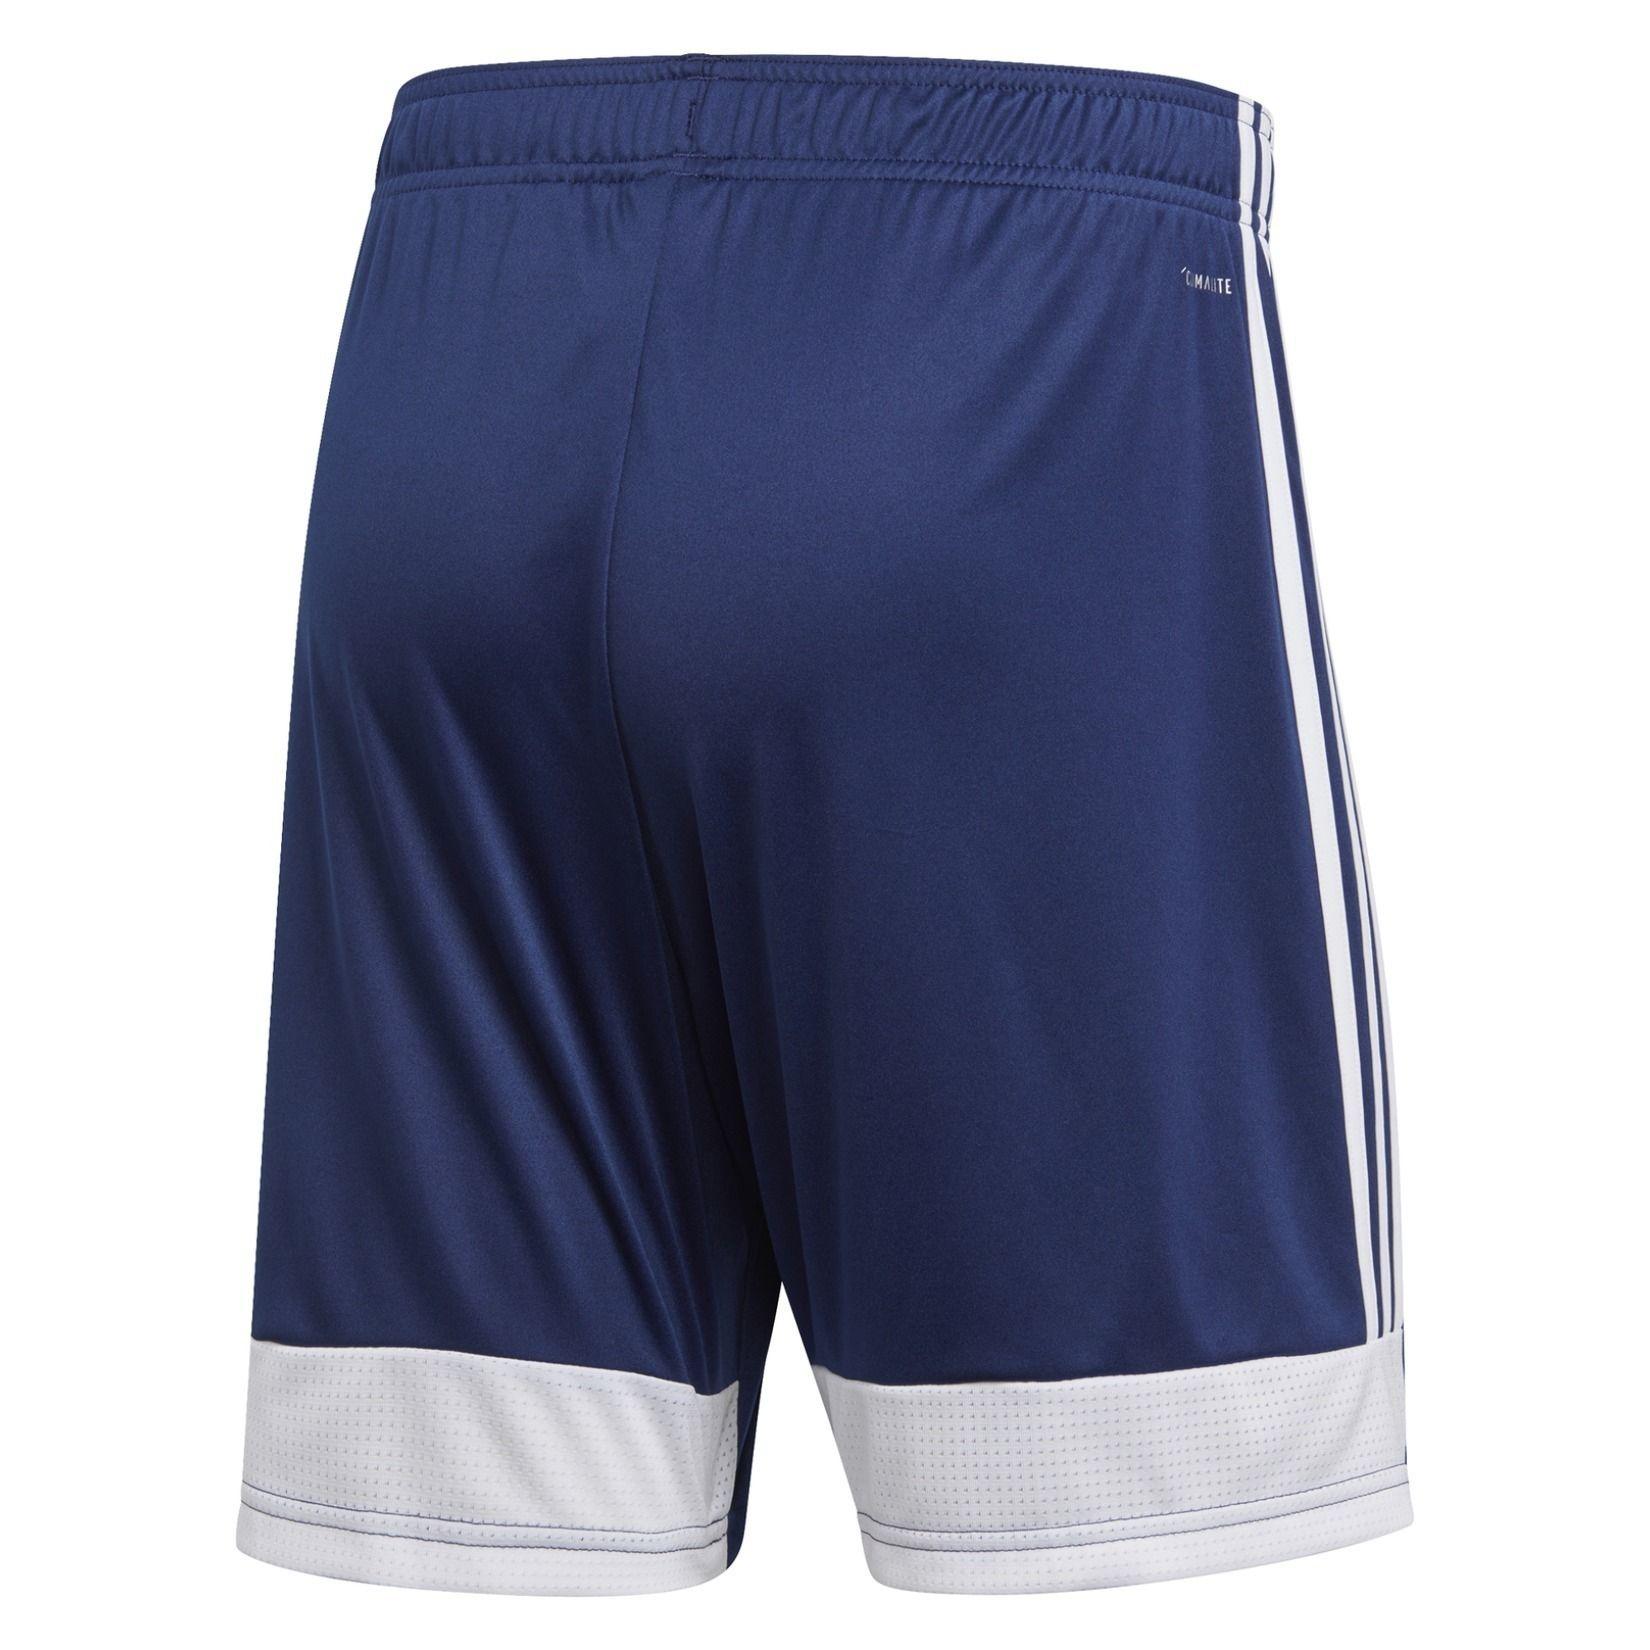 19 Shorts - Kitlocker.com